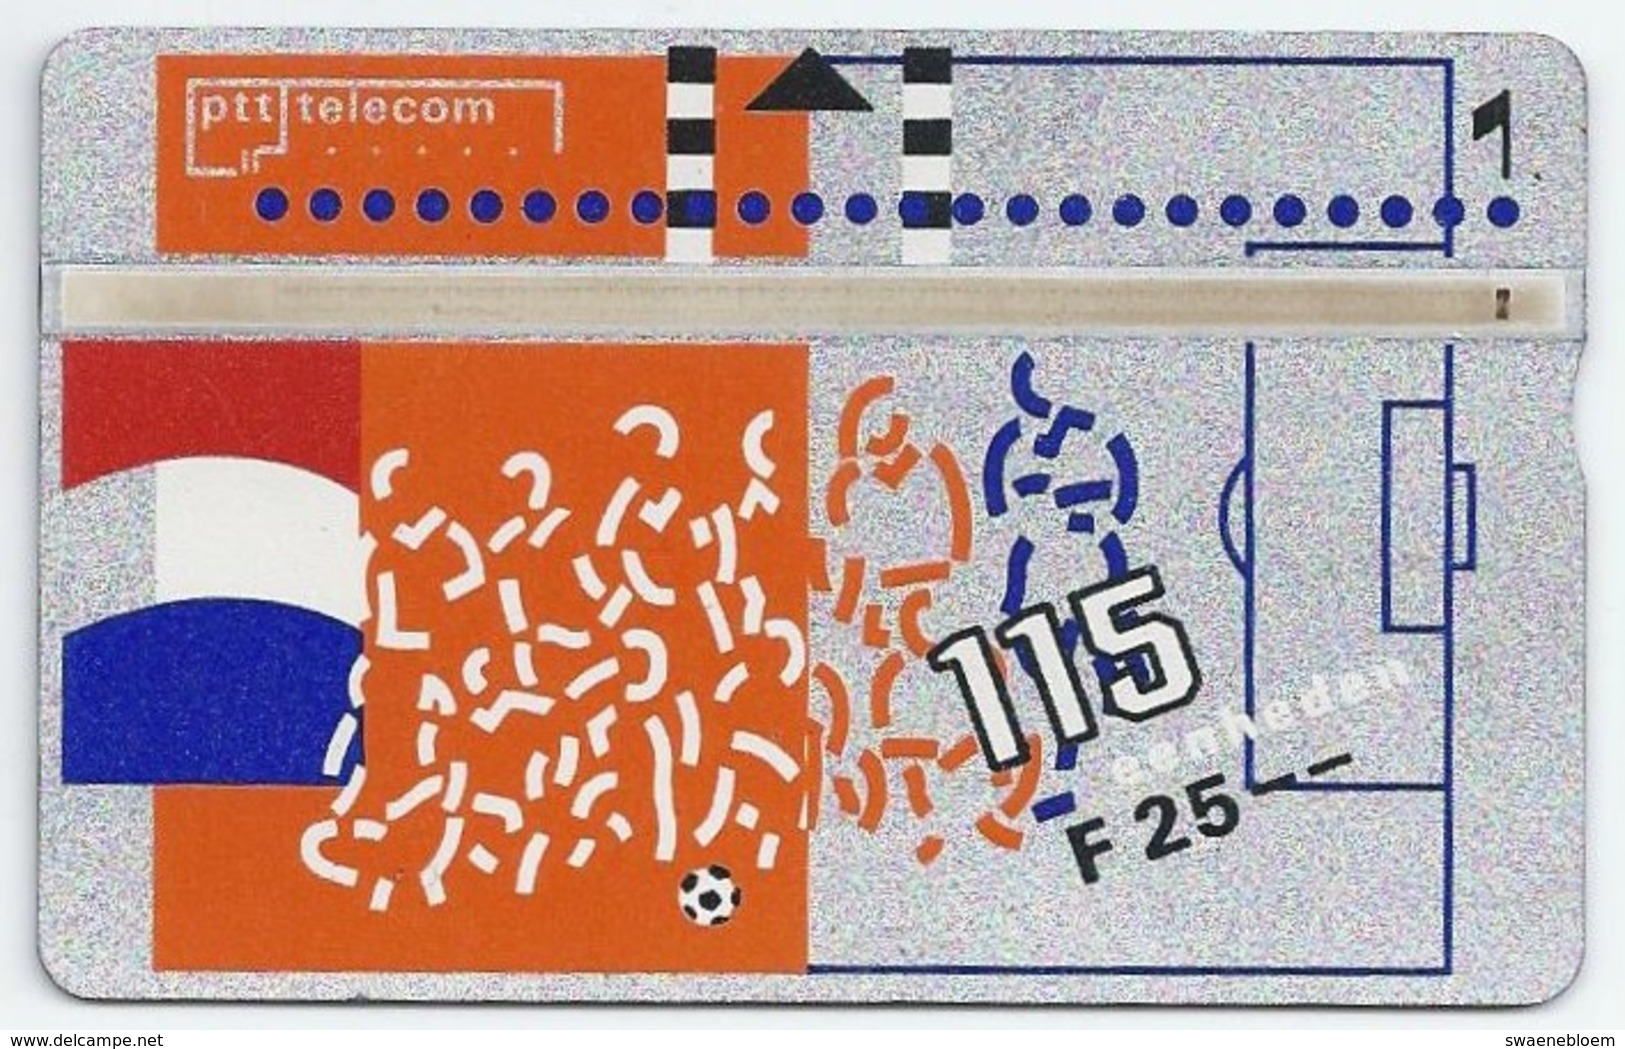 Telefoonkaart.- 131F. Nederland. PTT Telecom Is Officieel Sponsor Van De KNVB. Voetbal. Vlag. 25 Gulden. 115 Eenheden. - öffentlich